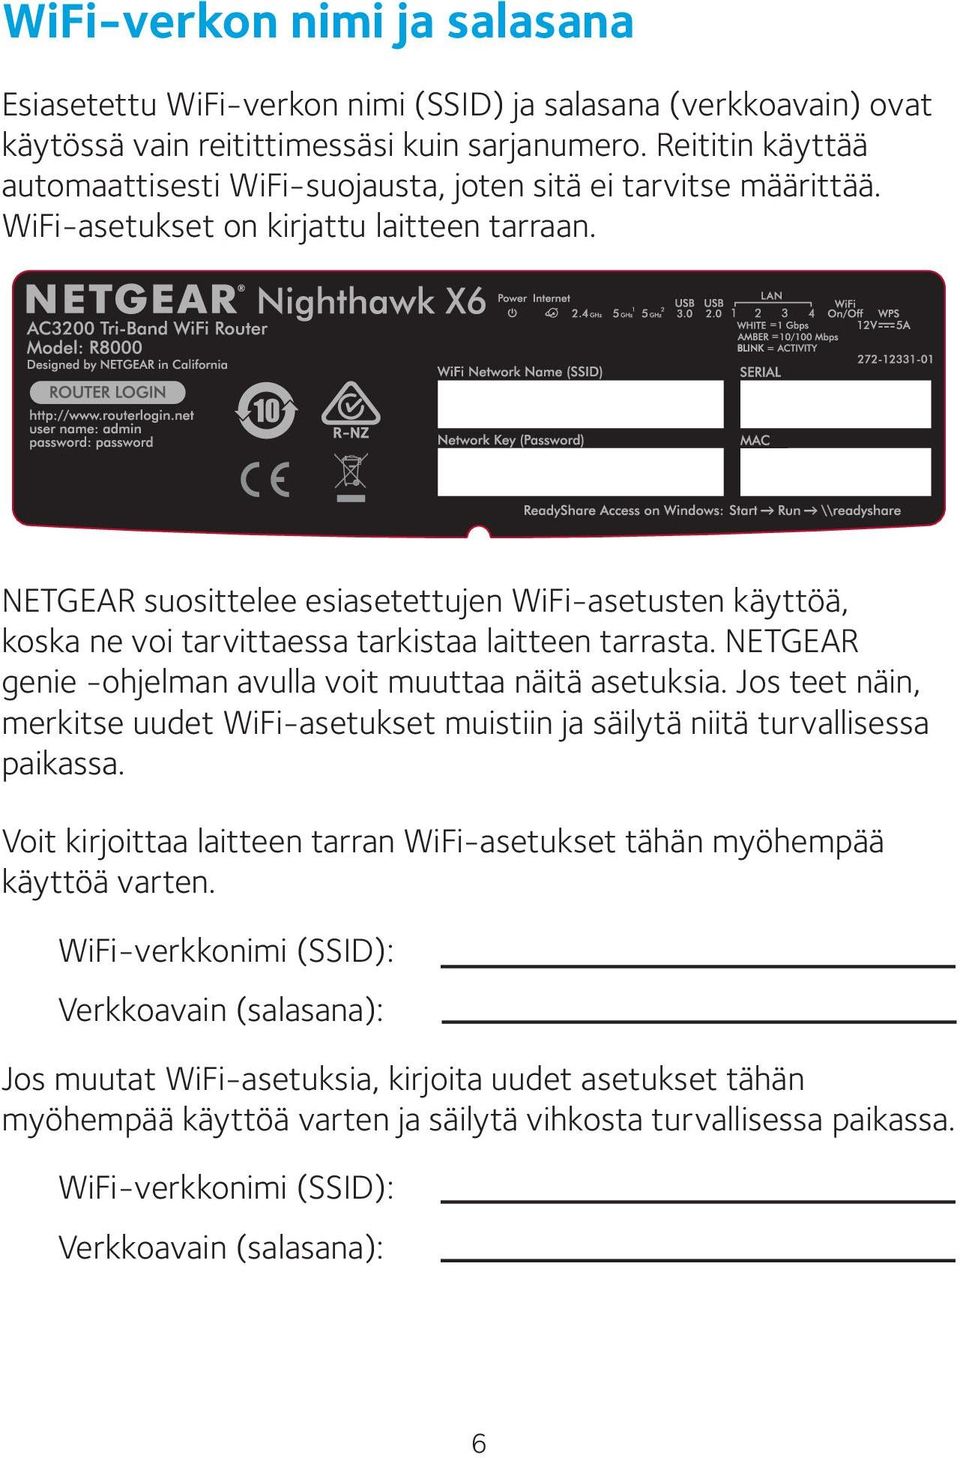 NETGEAR suosittelee esiasetettujen WiFi-asetusten käyttöä, koska ne voi tarvittaessa tarkistaa laitteen tarrasta. NETGEAR genie -ohjelman avulla voit muuttaa näitä asetuksia.